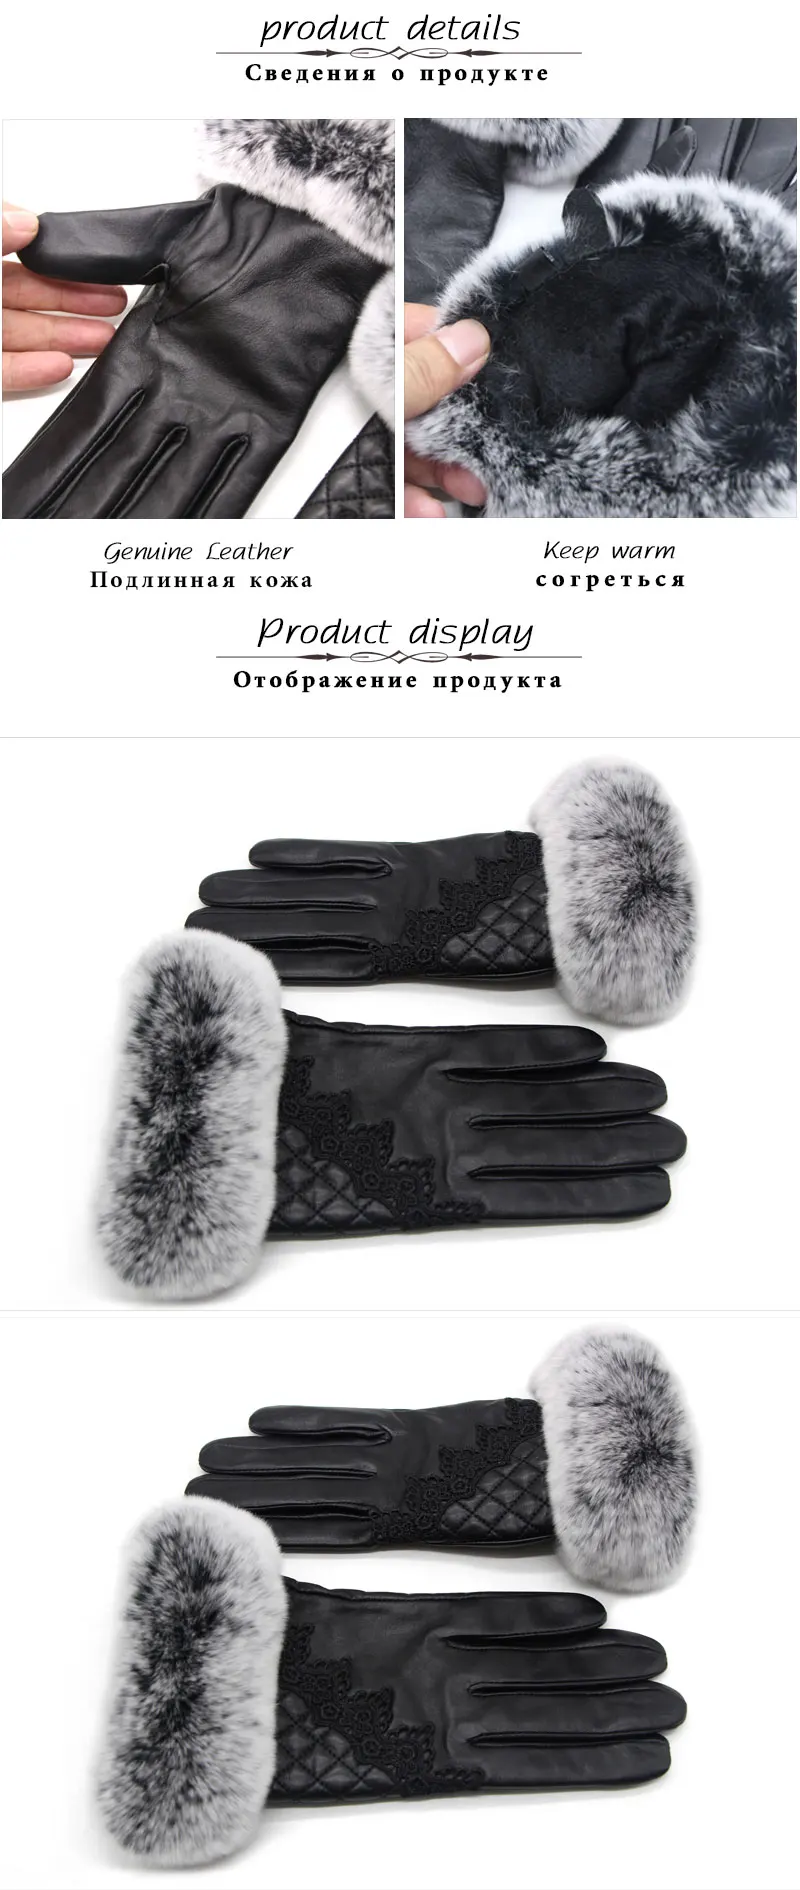 2018 новые женские перчатки наручные шерстяной подкладкой Модные кожаные перчатки овчины женские модели вождения мех кролика теплые